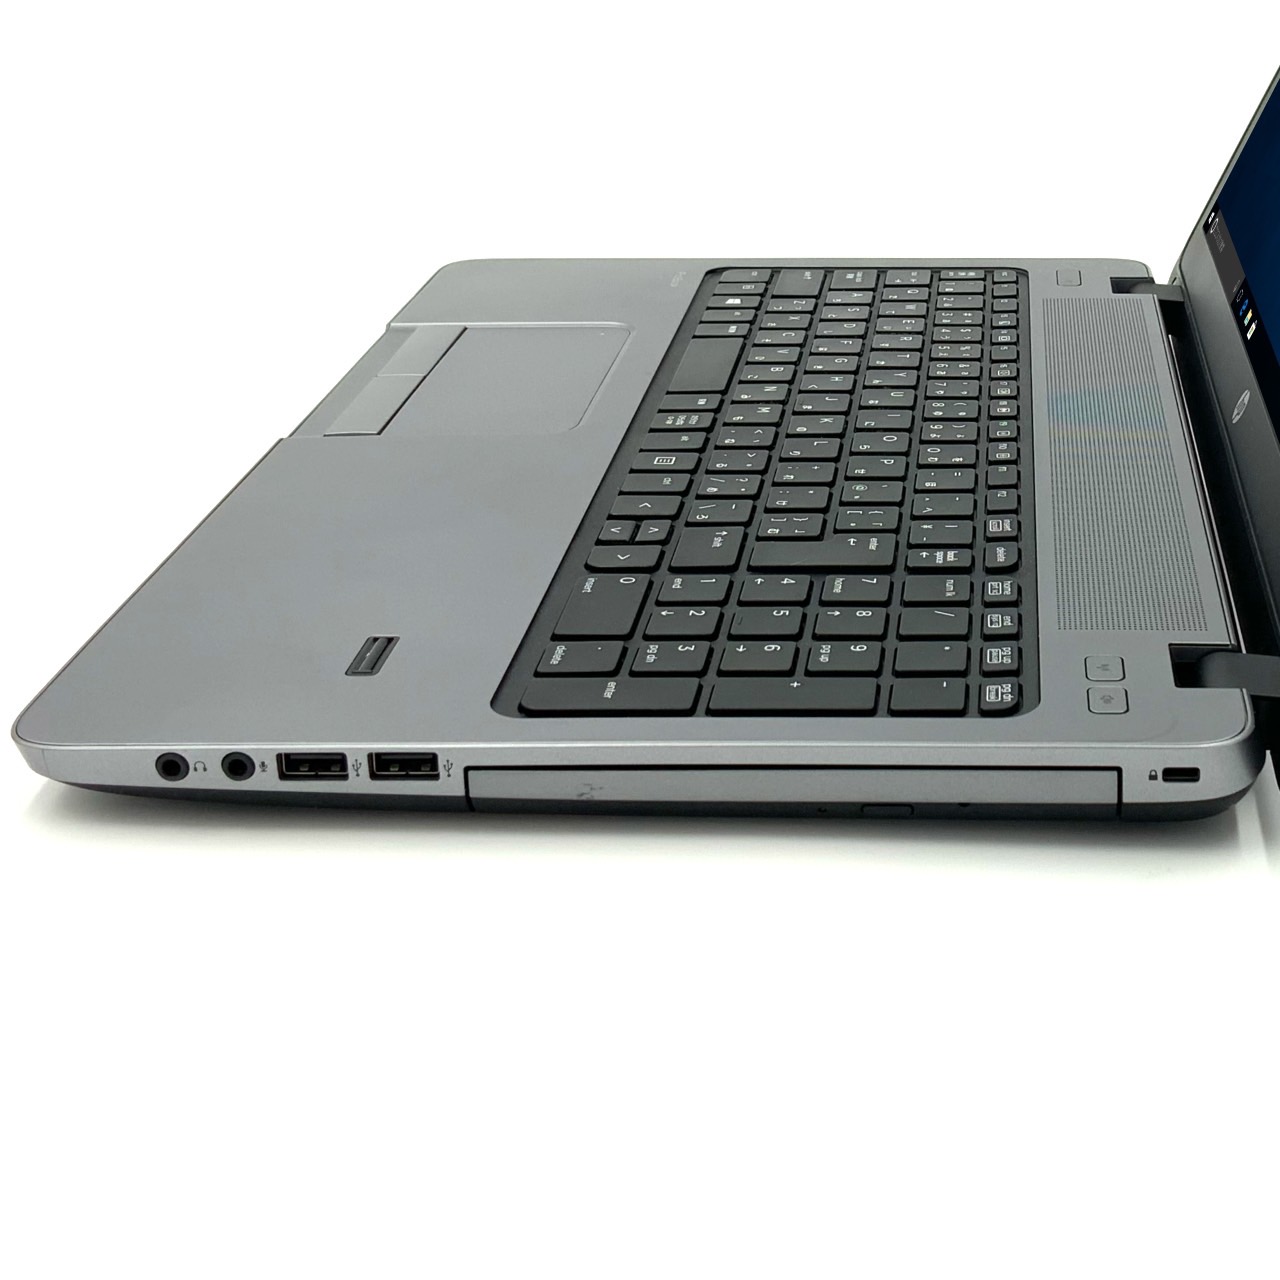 法人値引有 HP ProBook 450 G1 Celeron 2950M メモリ 4GB ノートPC